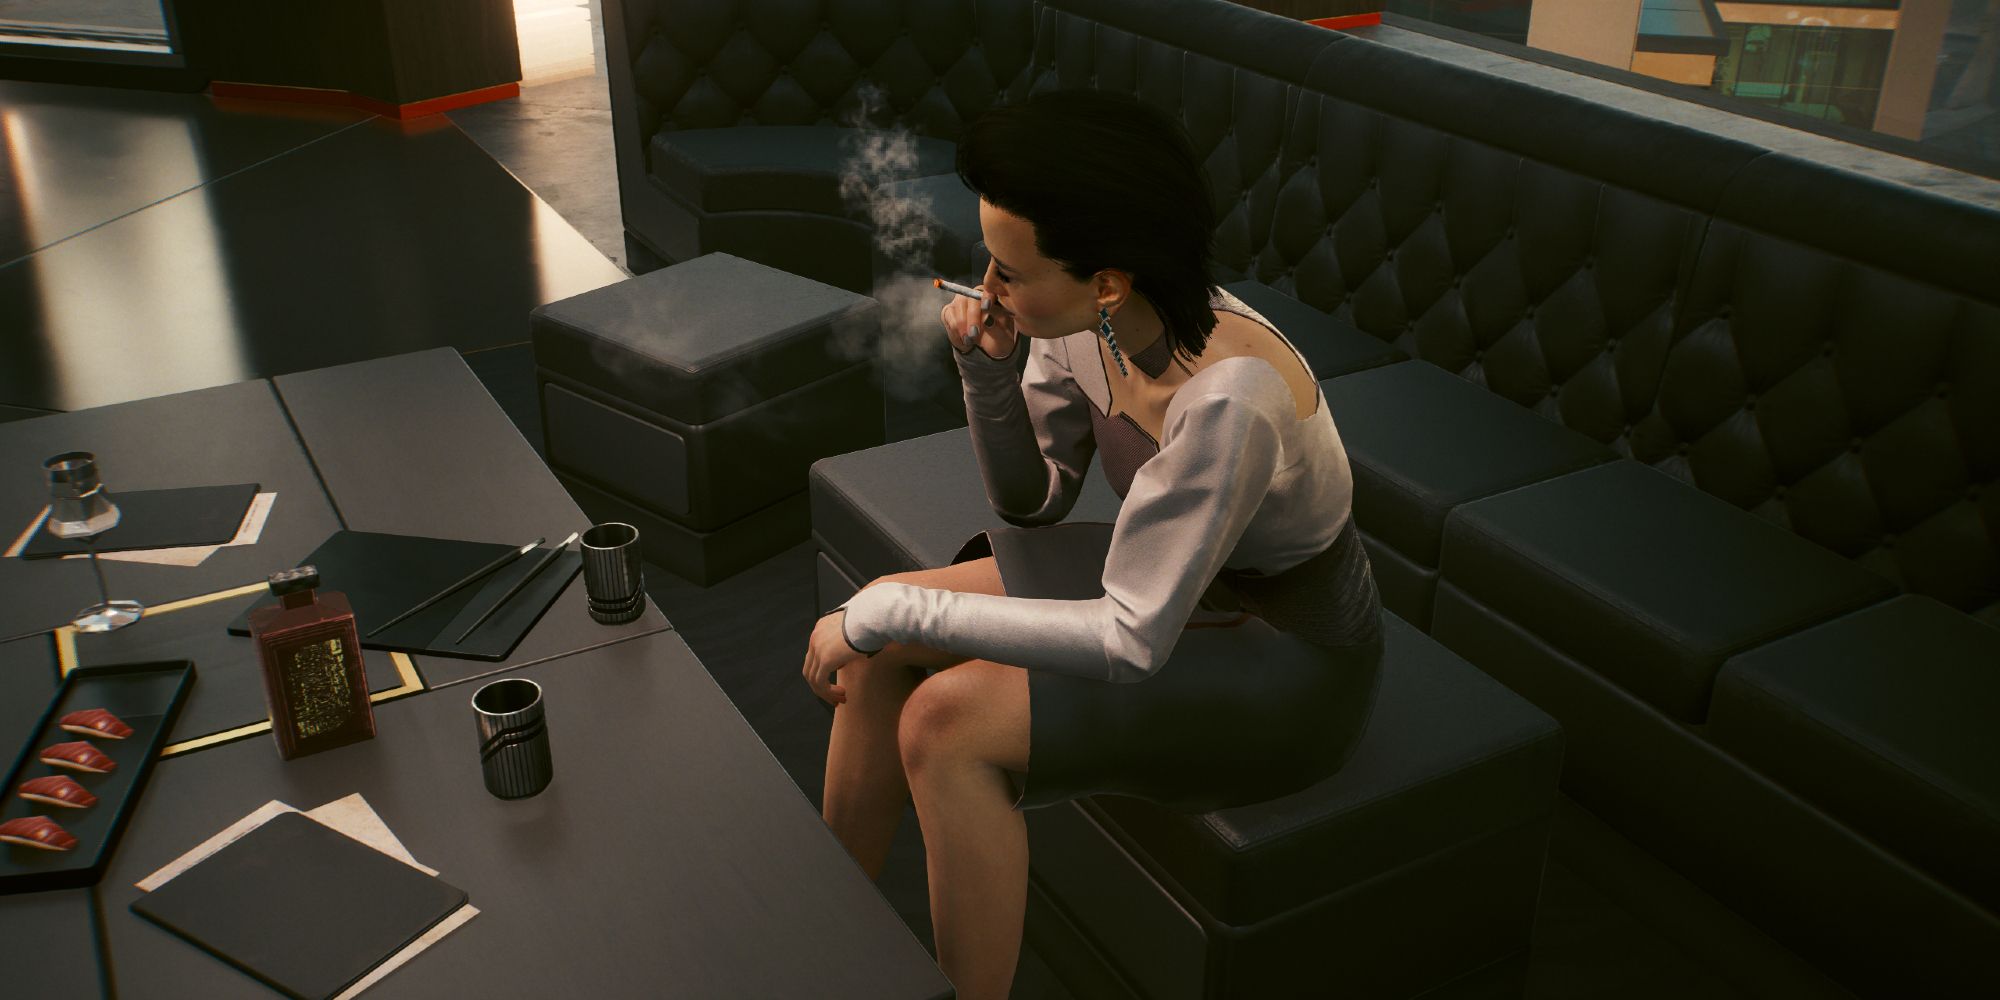 A stressed Elizabeth Peralez smoking a cigarette sitting in a sofa in Cyberpunk 2077.